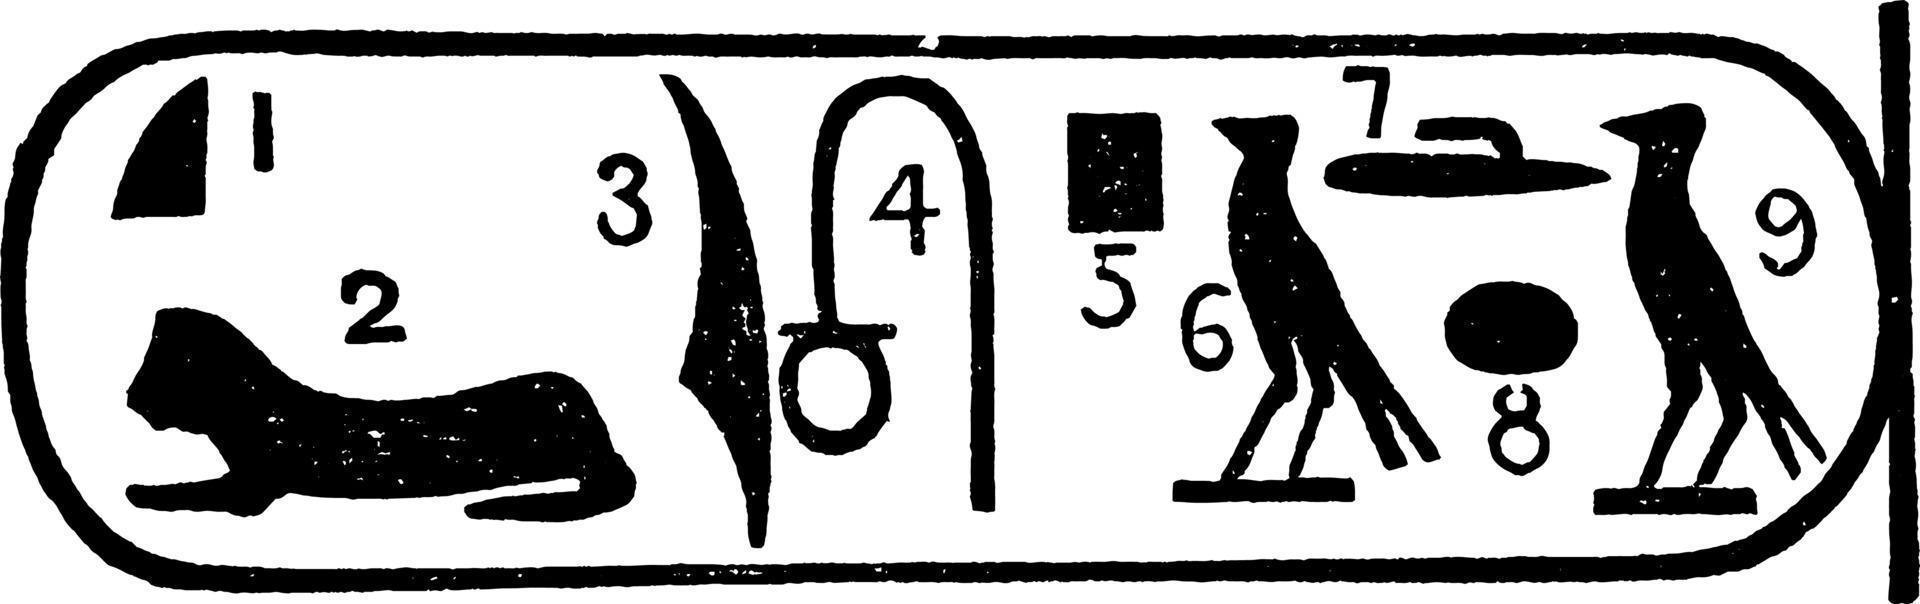 Rosetta steen of lezing hiërogliefen, wijnoogst gravure vector